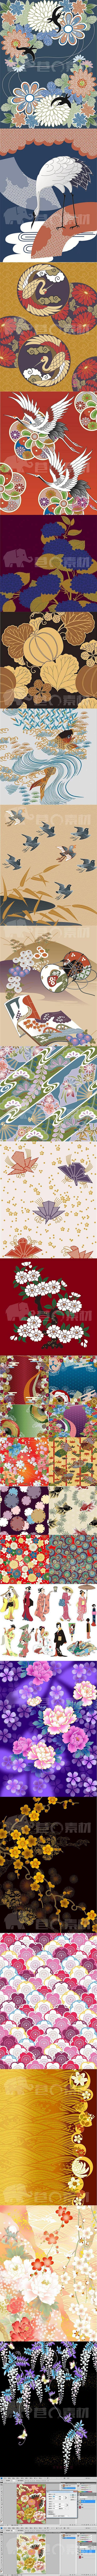 日本和风和服纹样图案花纹 日式产品包装纹...